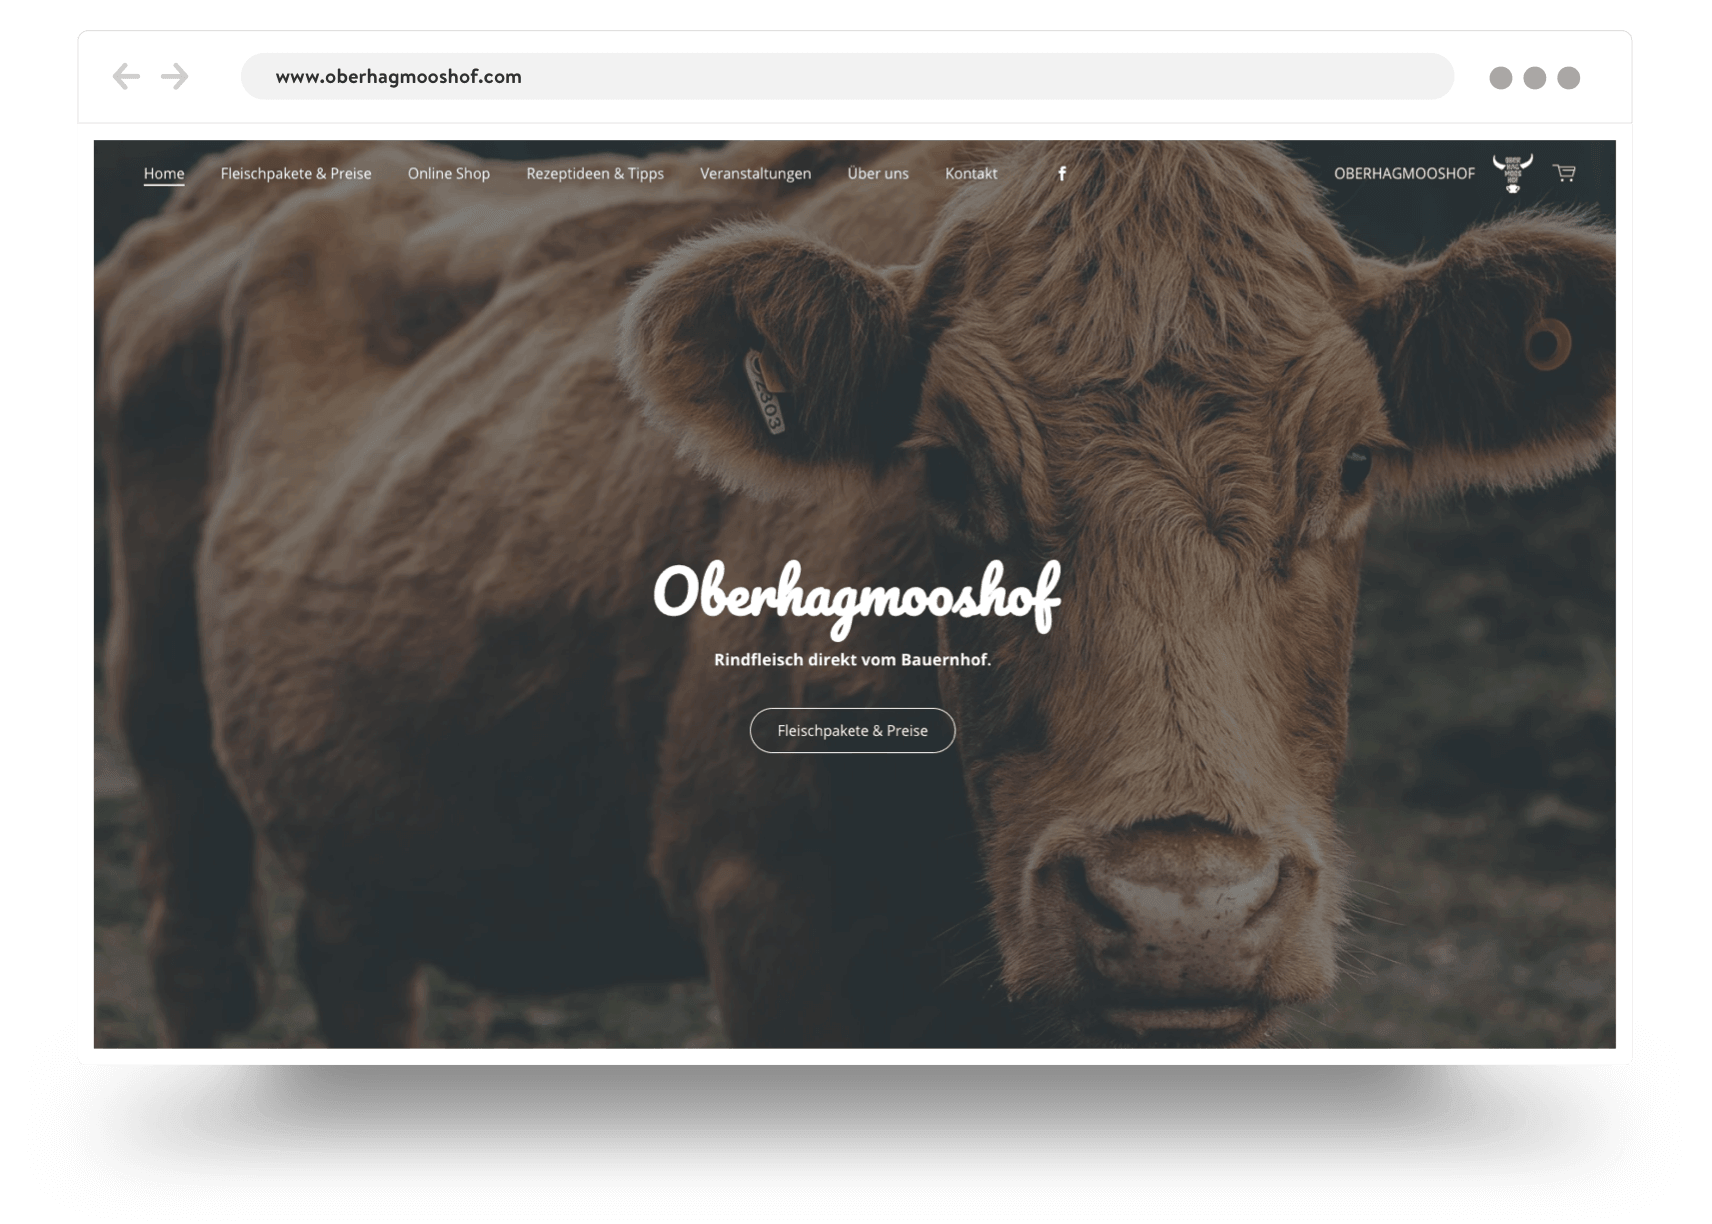 Webshop van een boerenbedrijf met een close-up van een koe